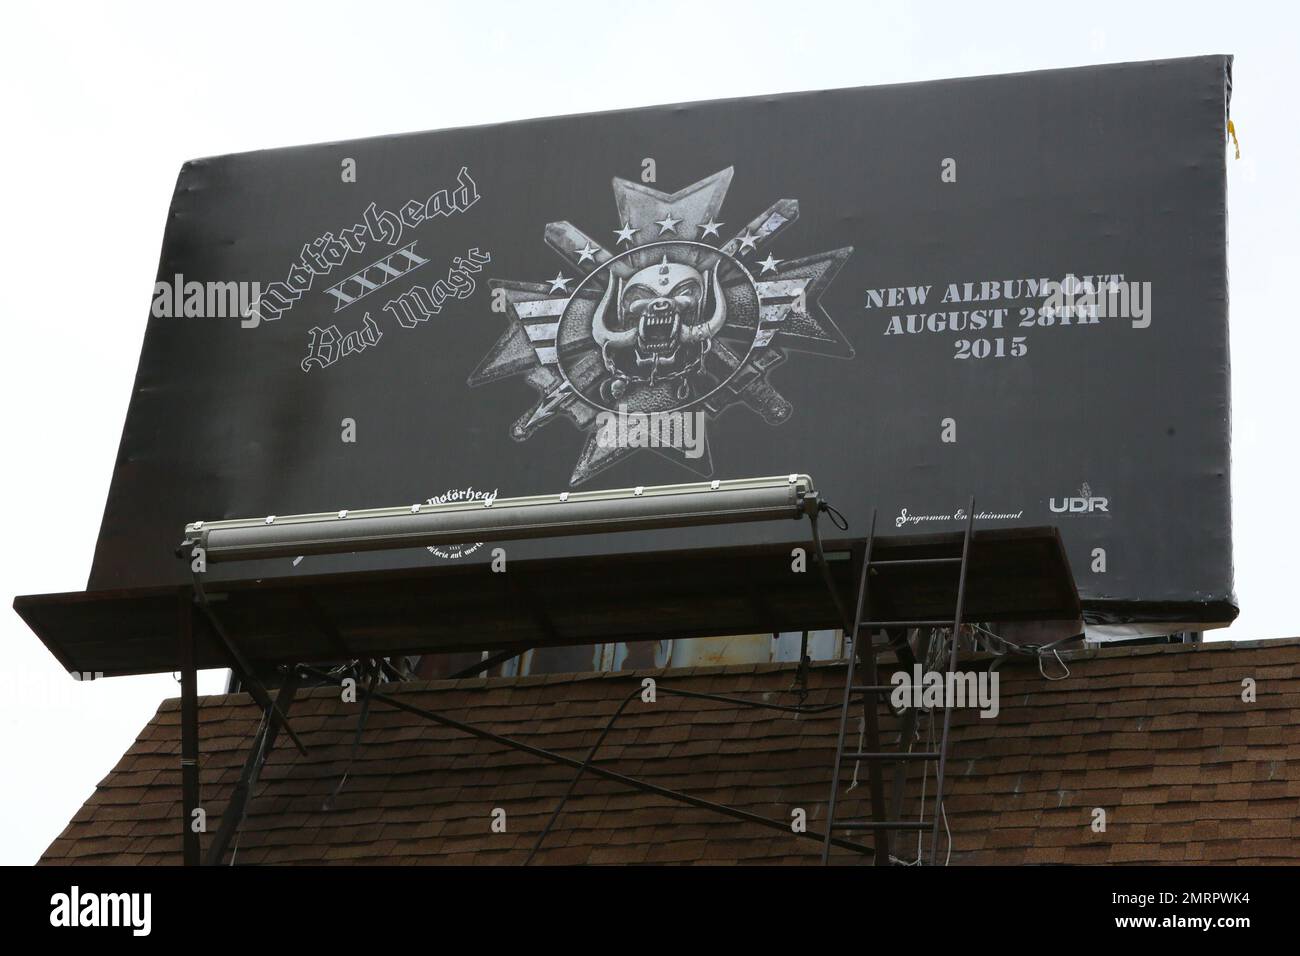 Les fans se sont rendus en hommage à Lemmy Kilmister de Motorhead lors de son service commémoratif au Rainbow Bar and Grill on the Sunset Strip. Los Angeles, Californie. 9th janvier 2016. Banque D'Images